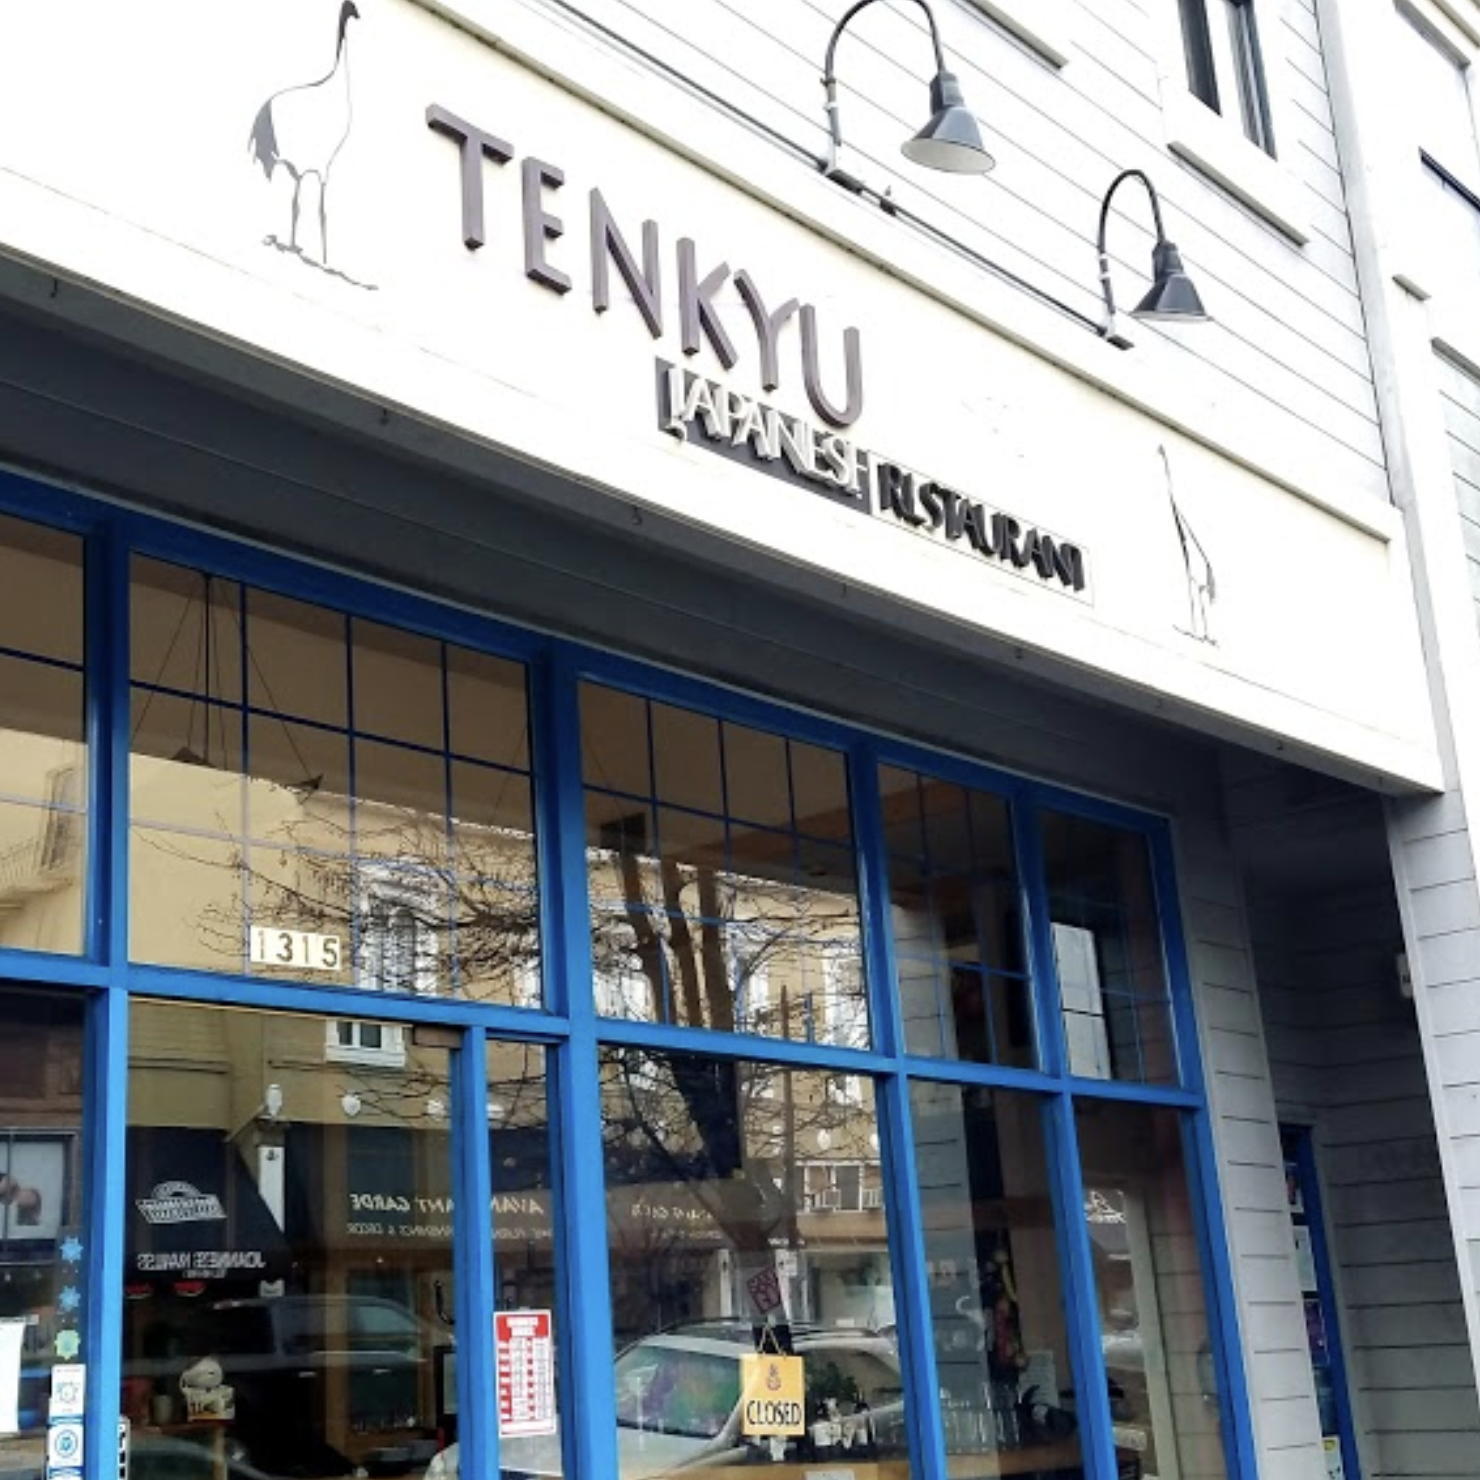 Tenkyu Sushi Restaurant